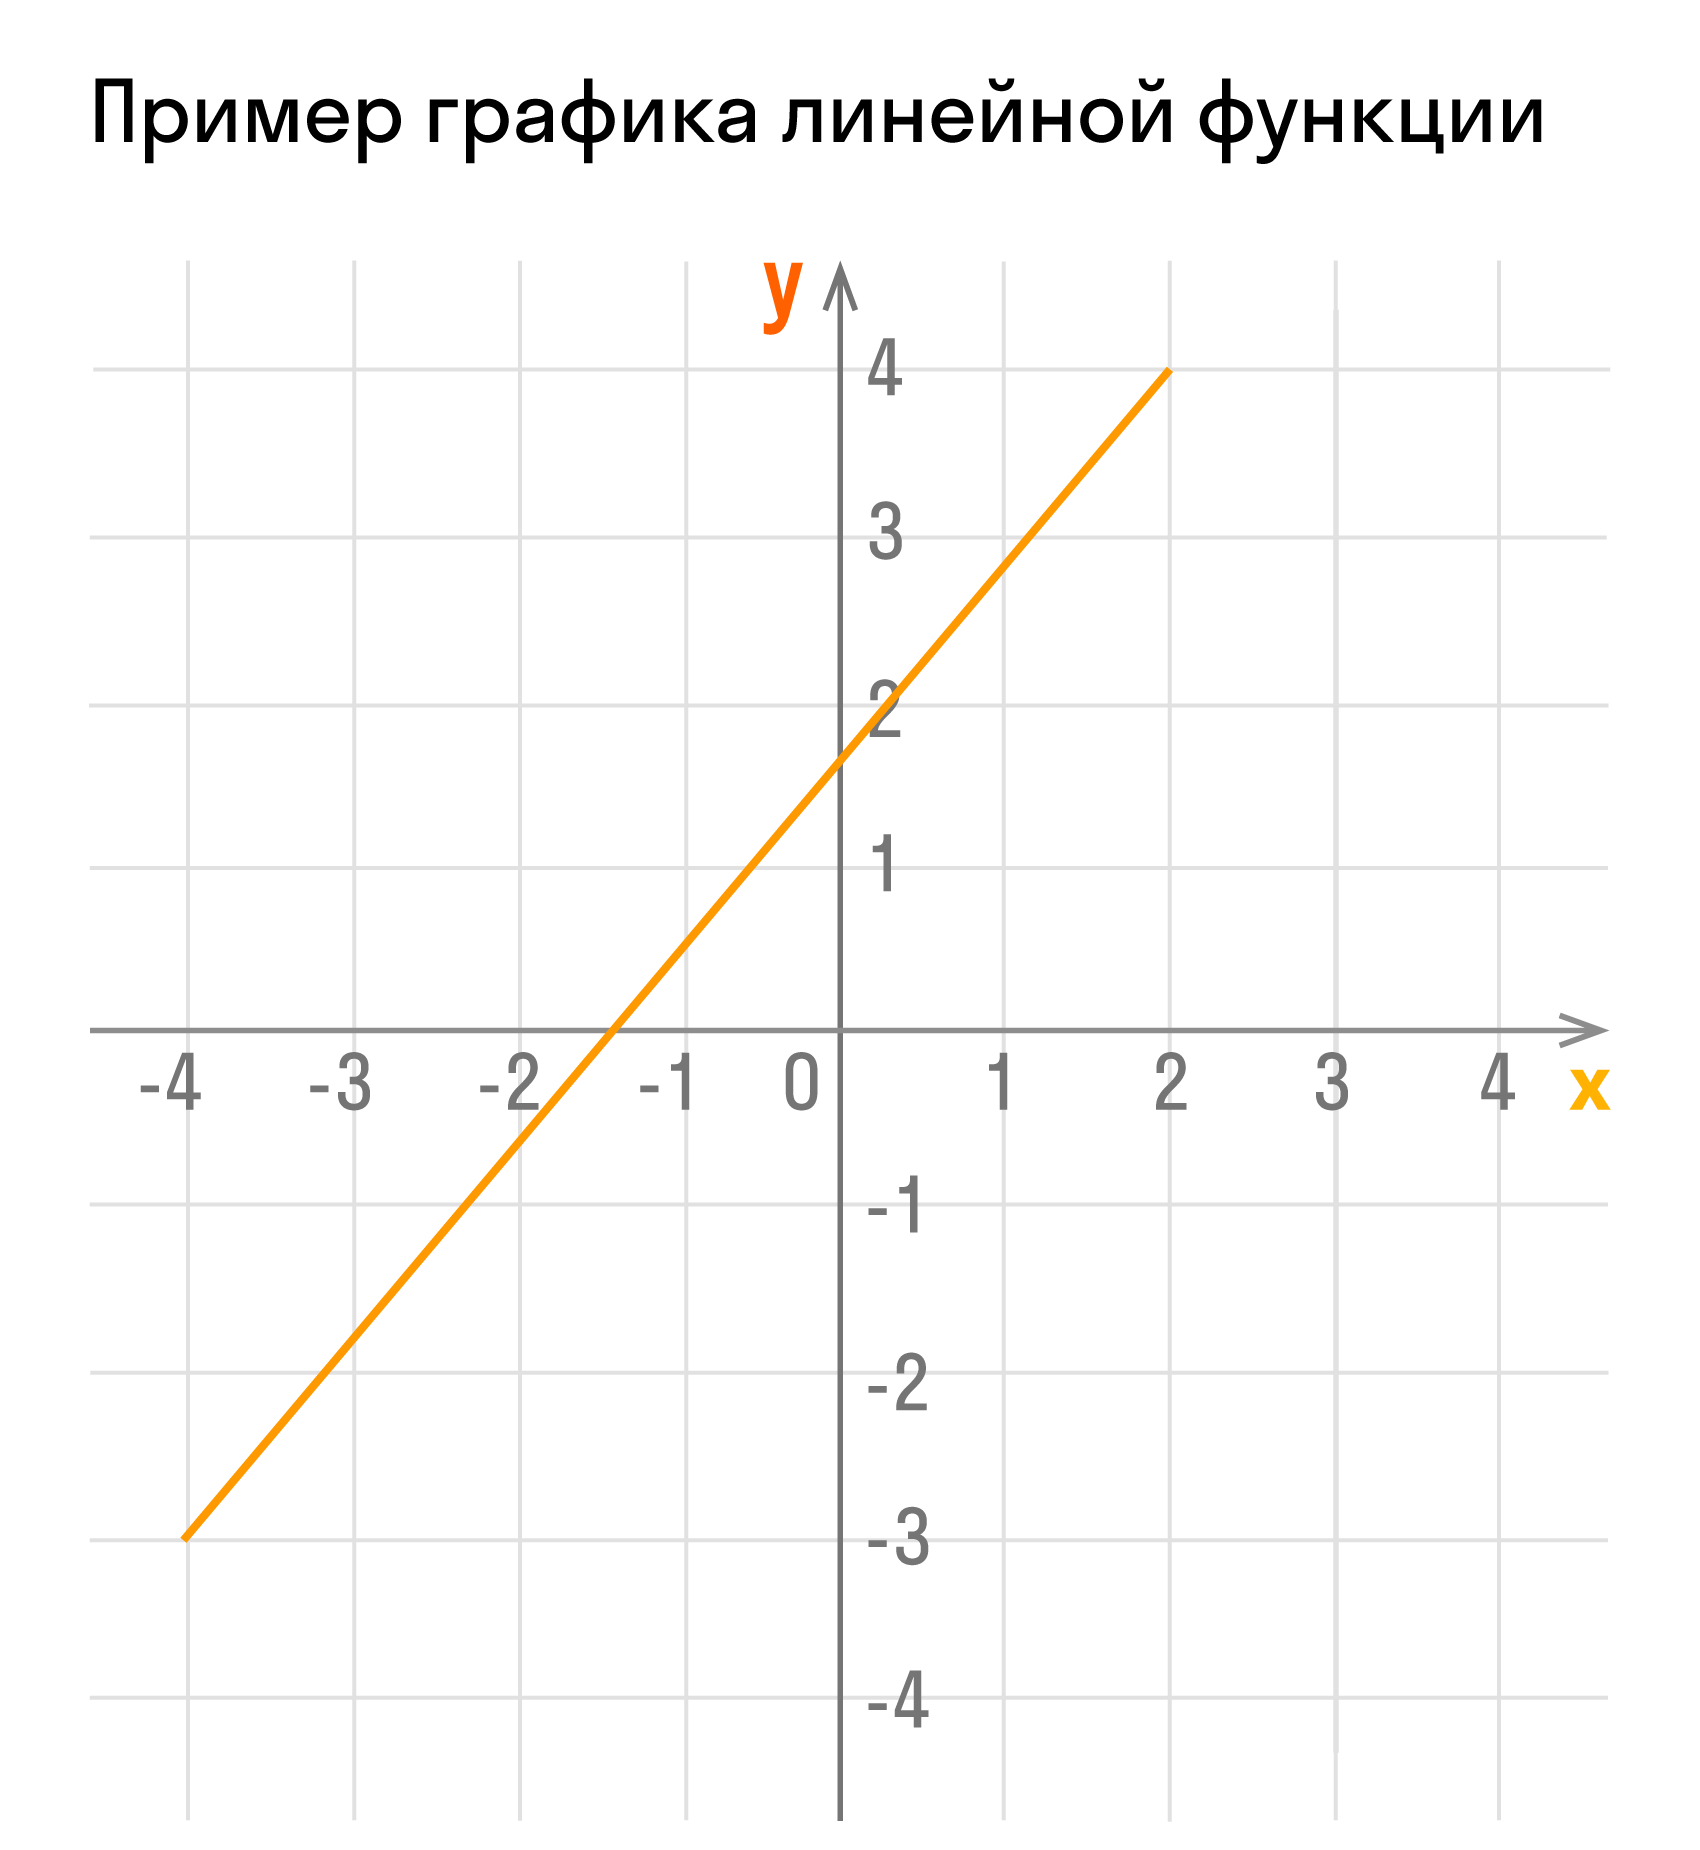 Пример графика линейной функции